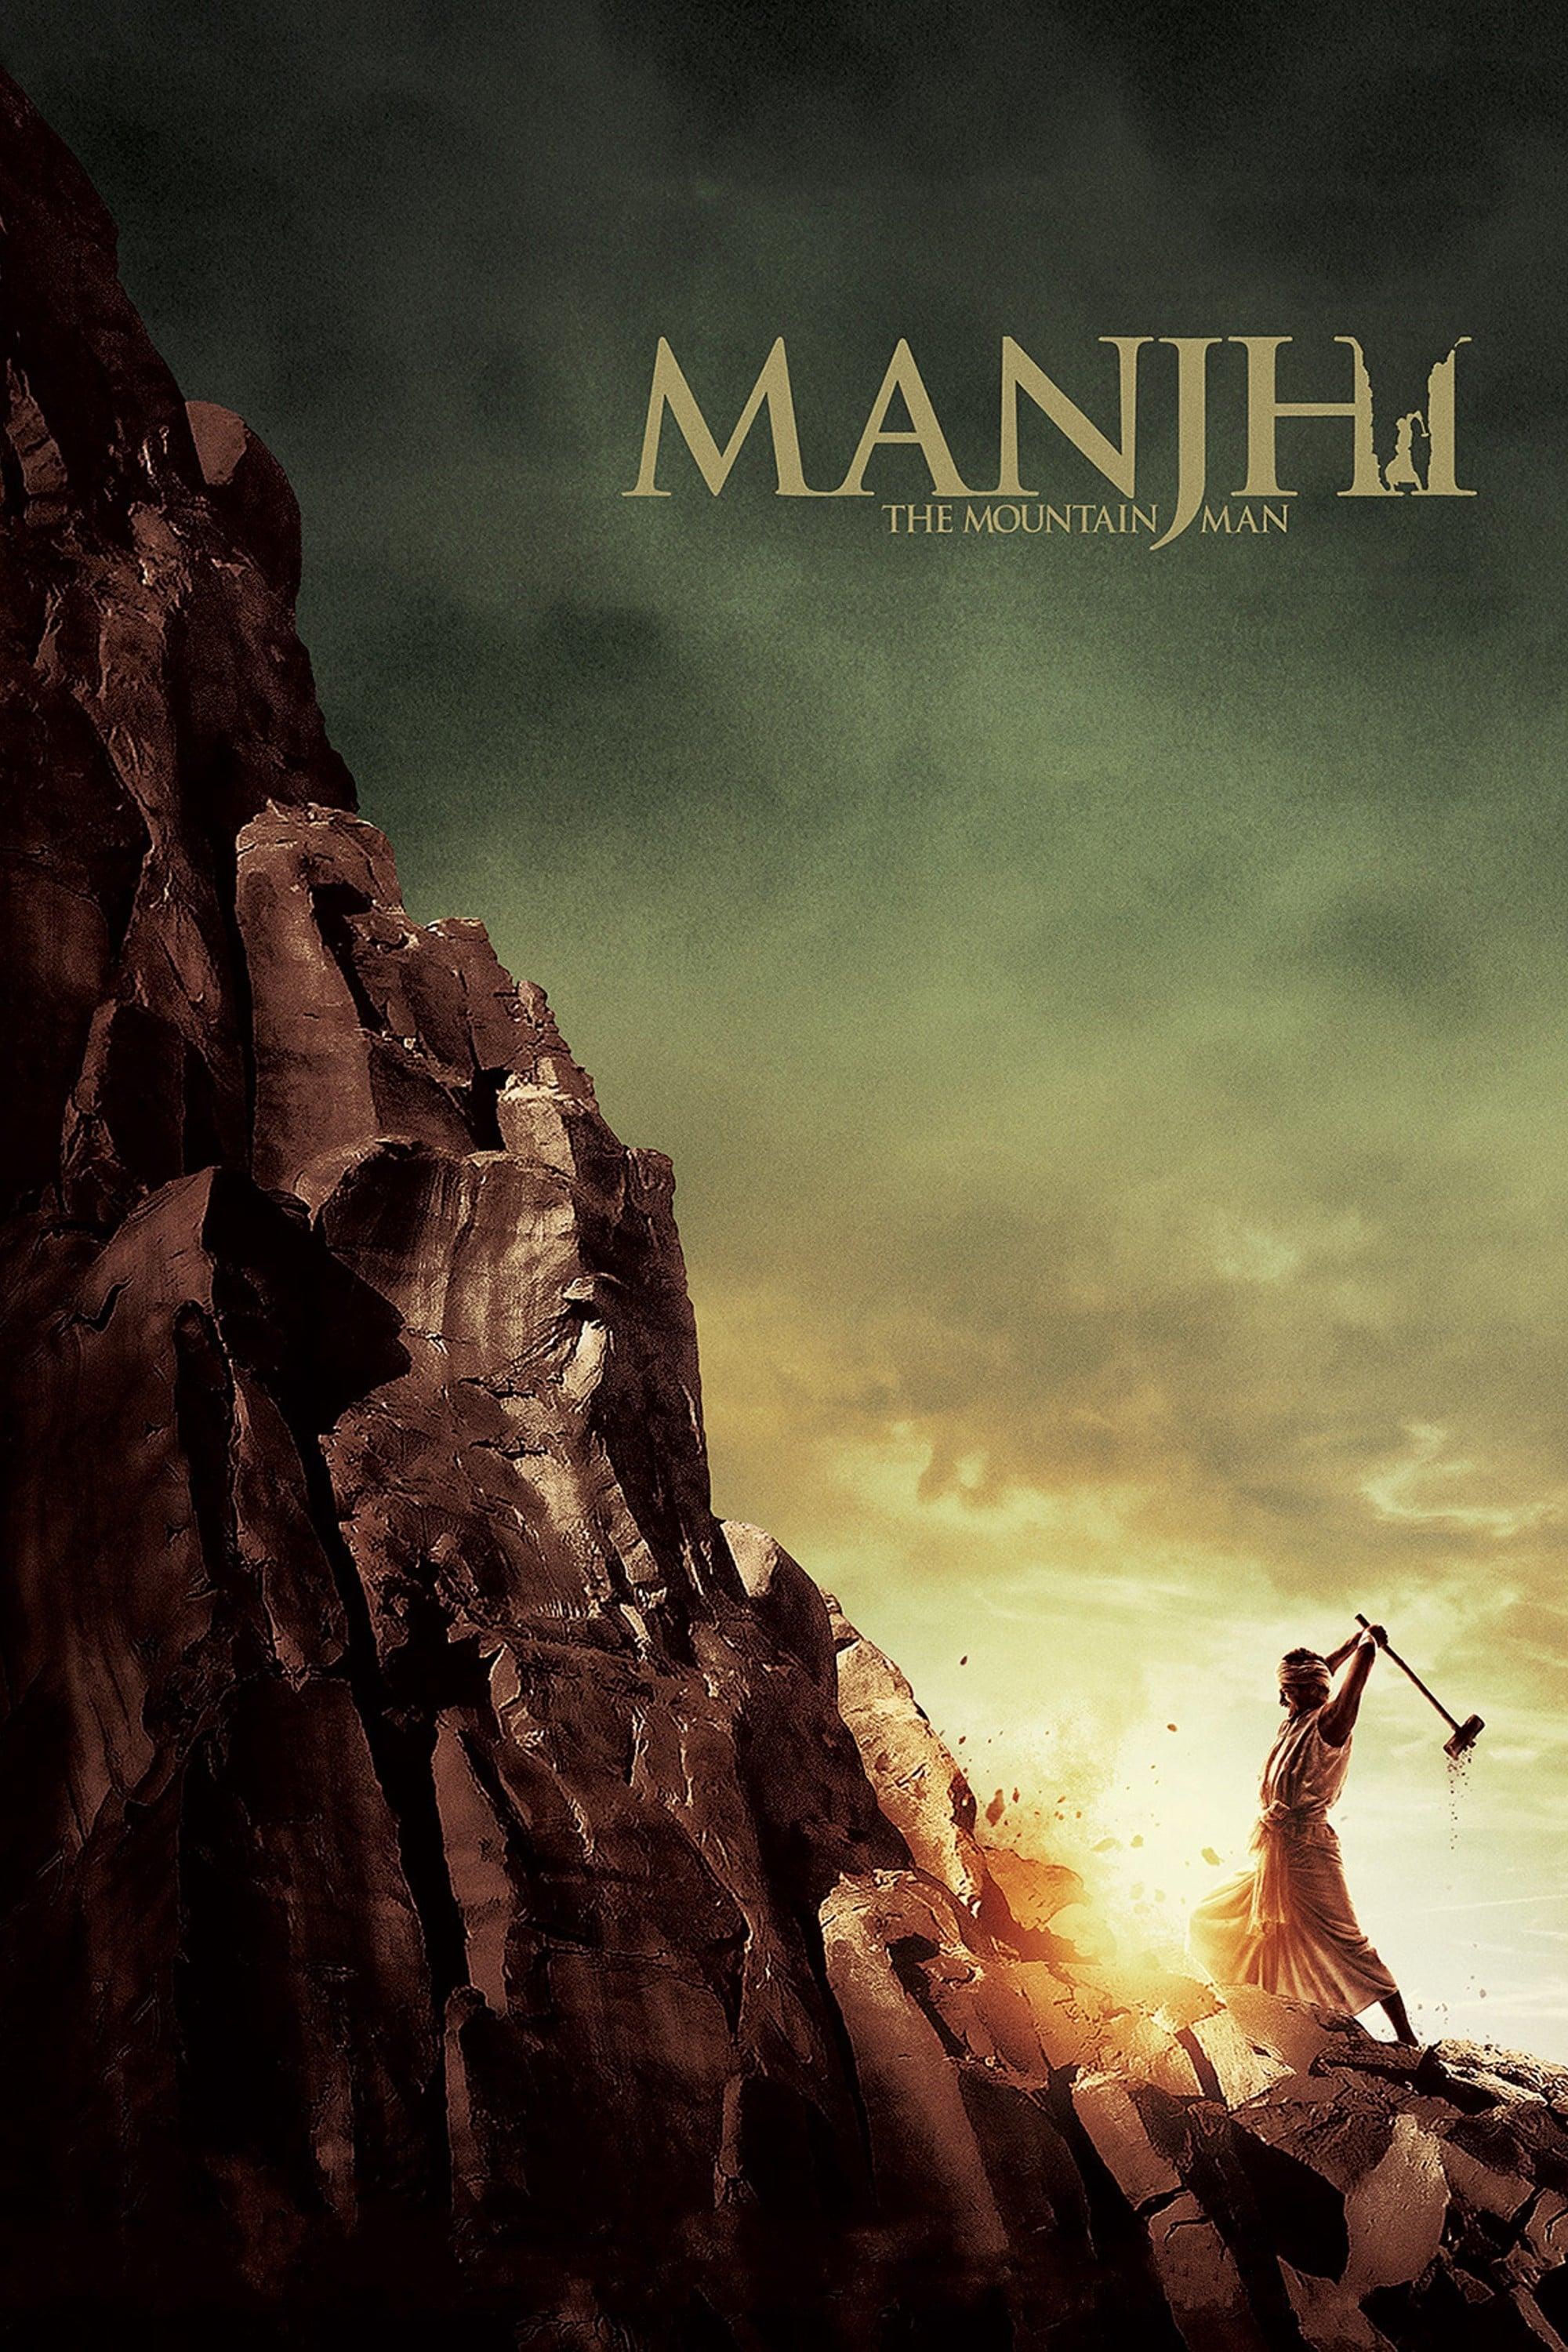 Manjhi: The Mountain Man poster